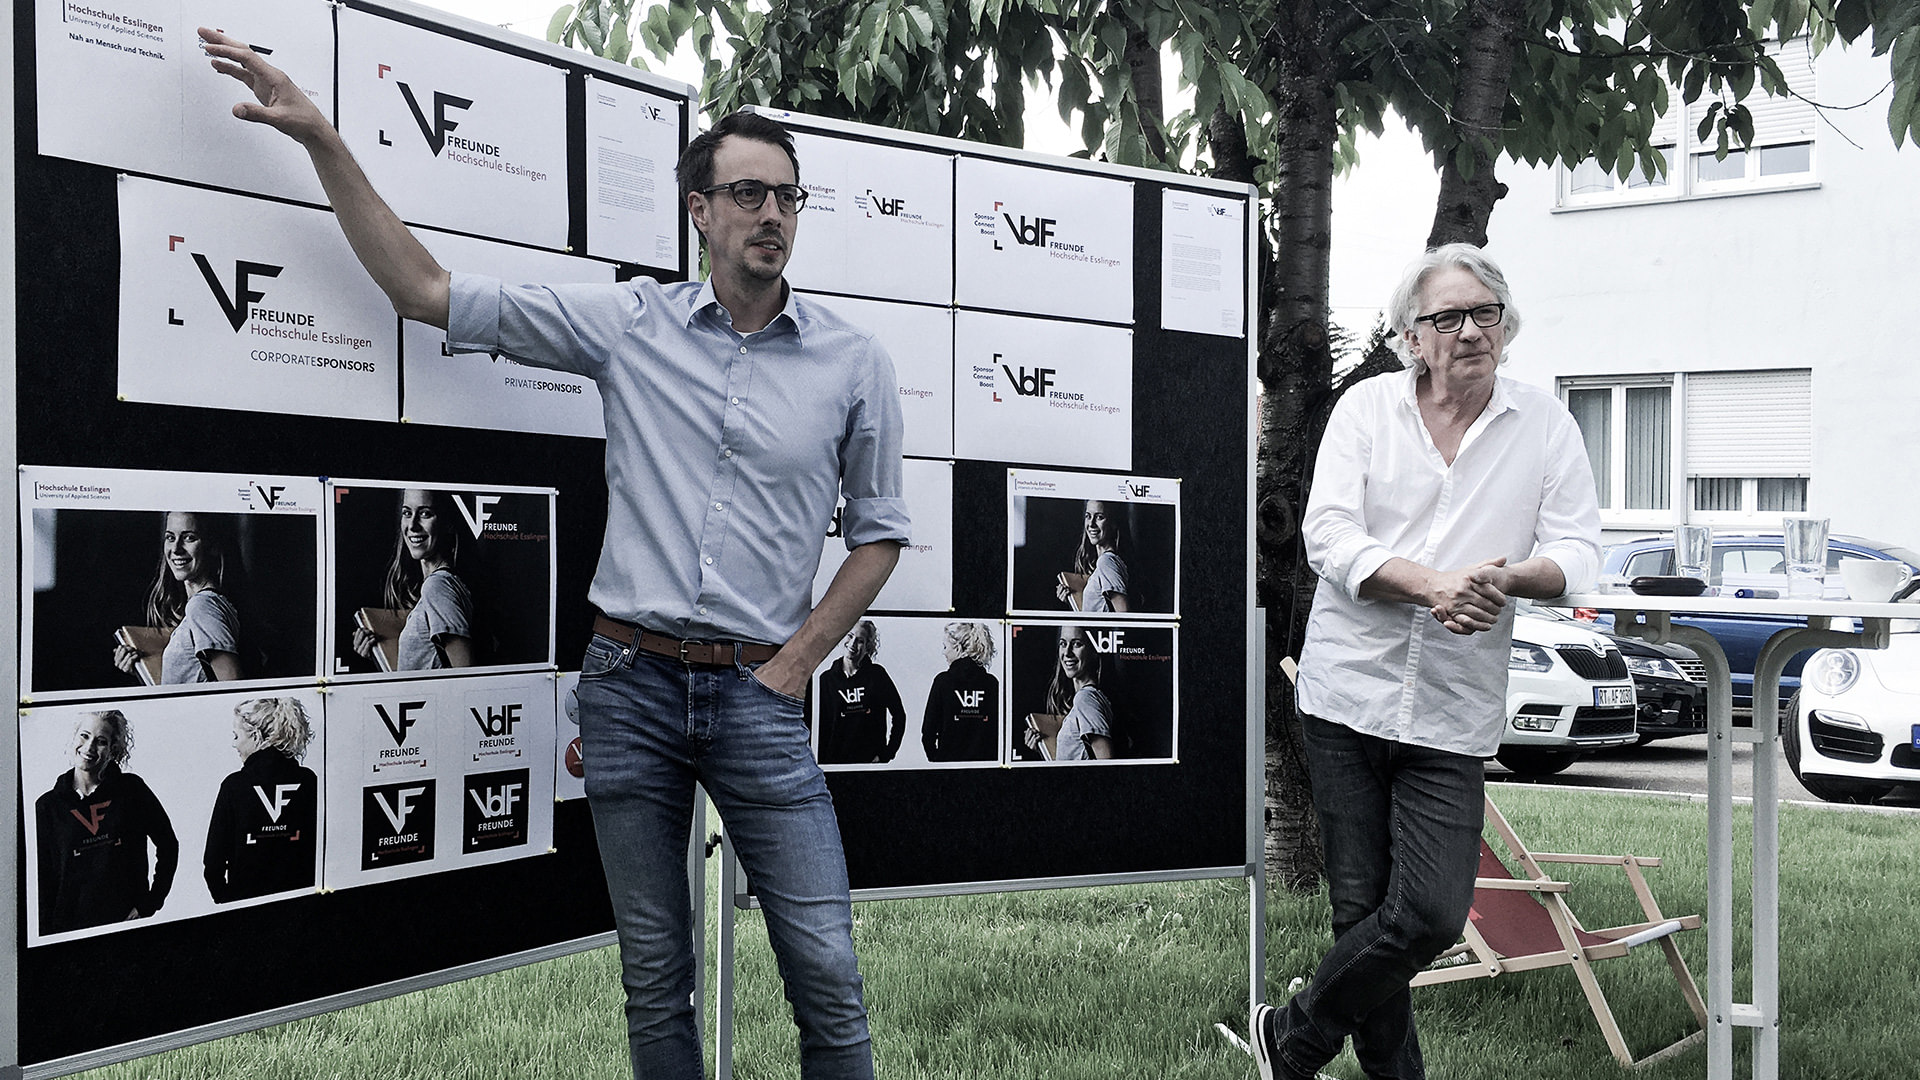 Christian Grupp und Janusz Ledwoch präsentieren auf Boards die Logoentwürfe für den VdF